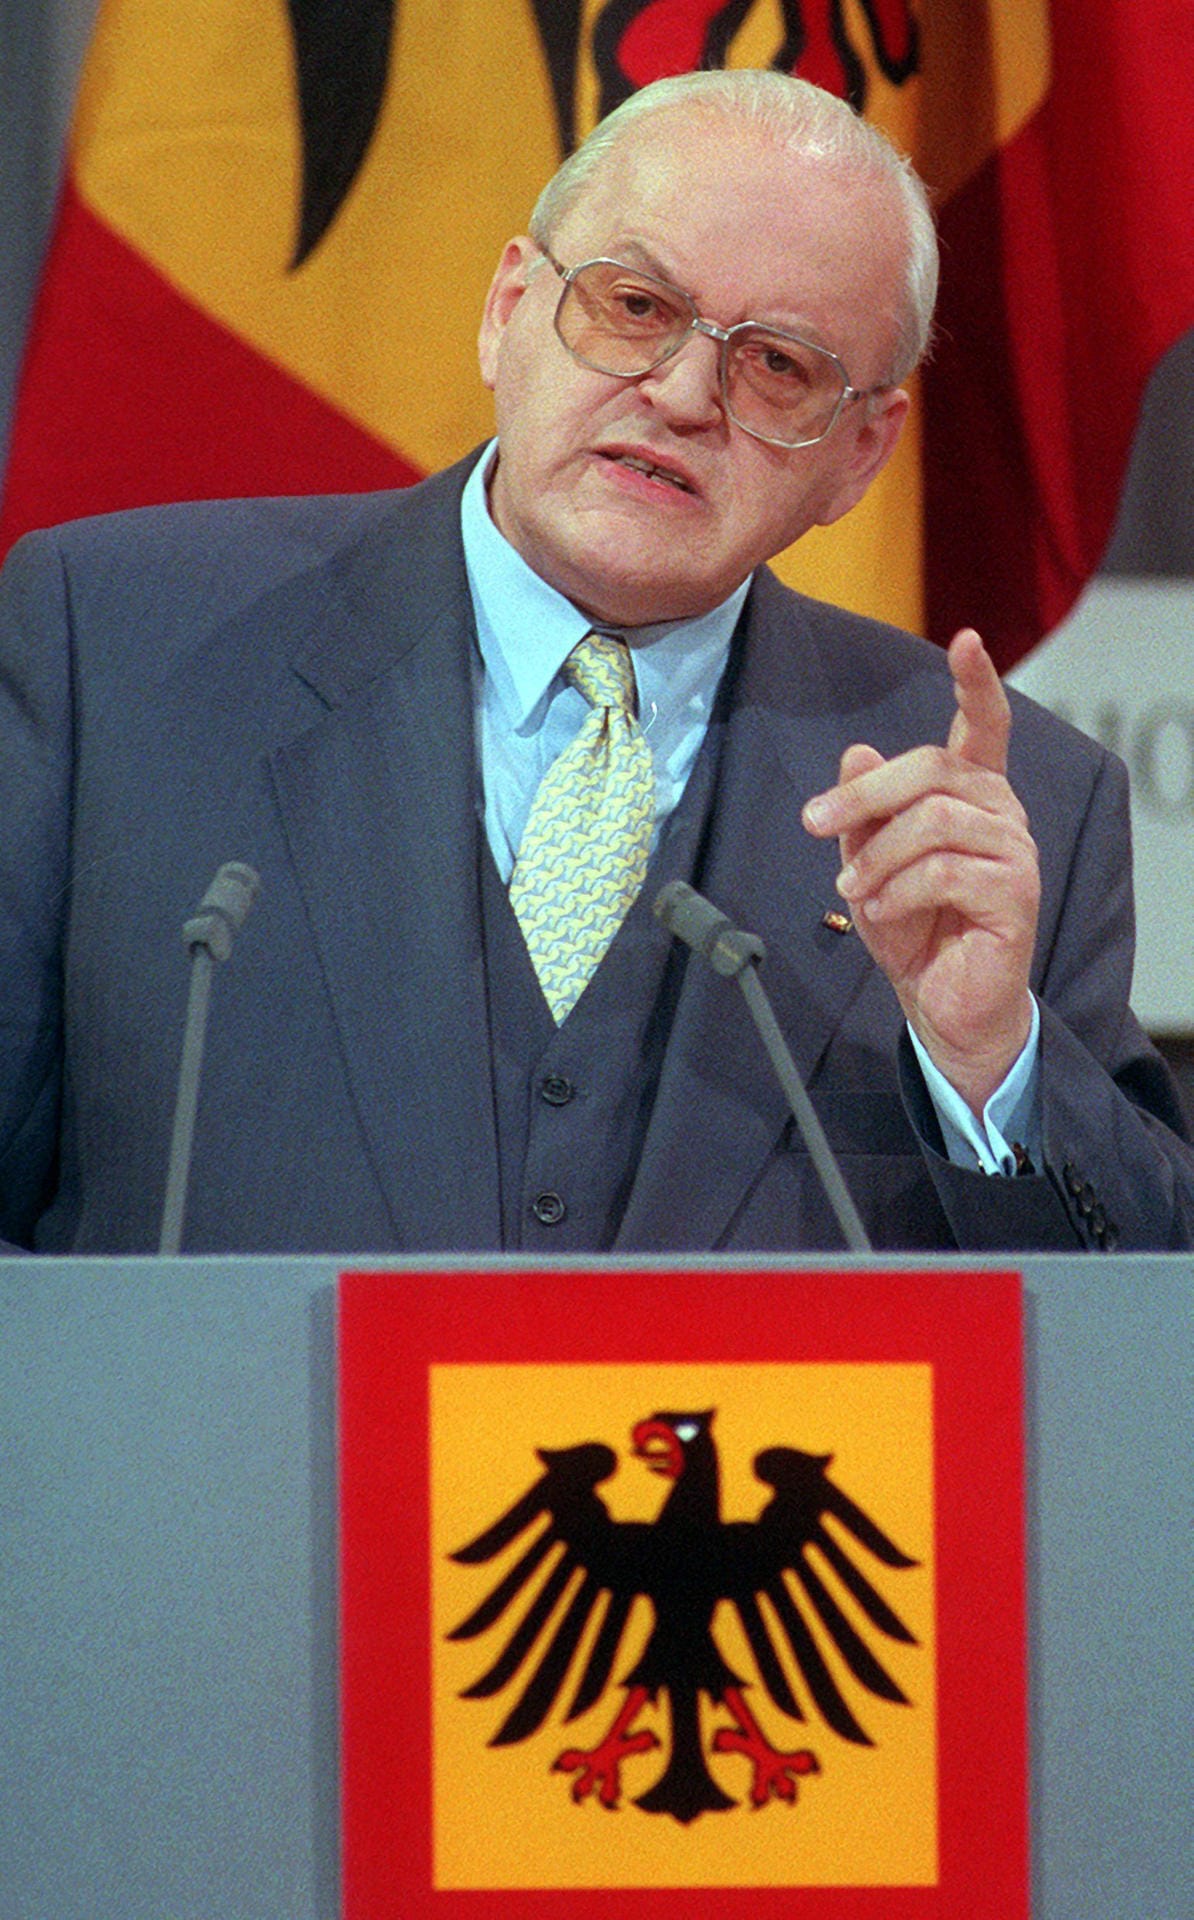 Die berühmte "Berliner Rede". Hier sagte Herzog als Bundespräsident im Jahr 1997: "Durch Deutschland muss ein Ruck gehen."